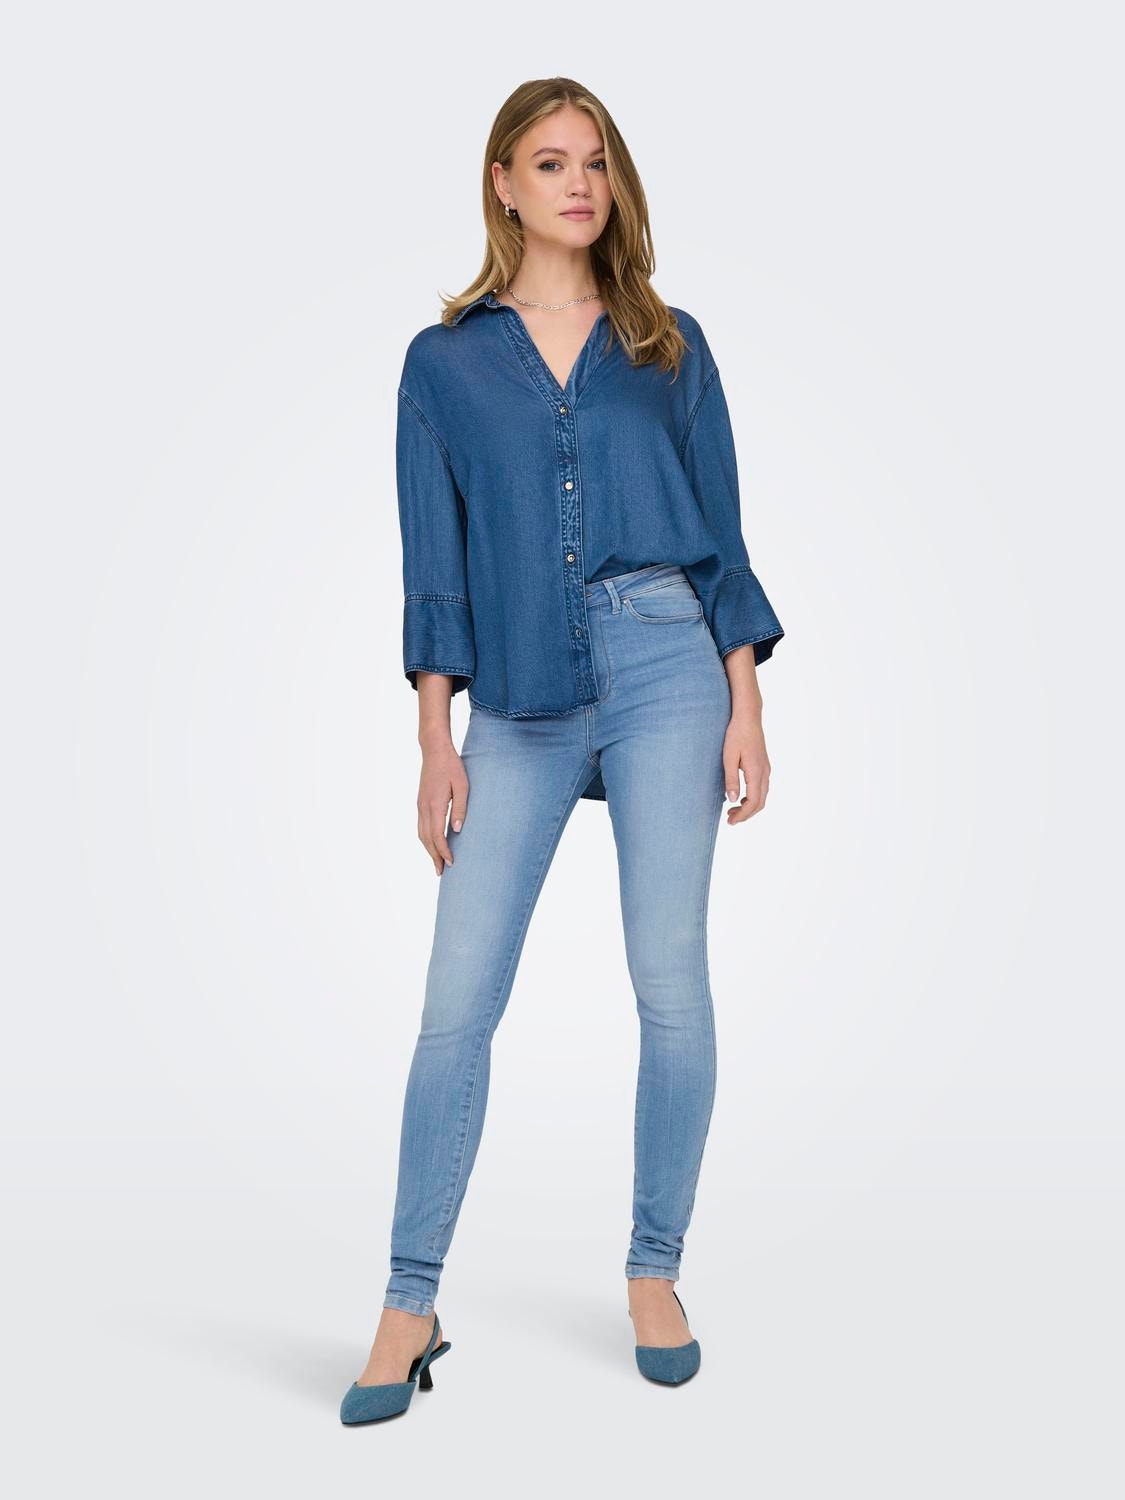 ONLY ONLForever High Waist Skinny Jeans -Light Blue Denim - 15313879